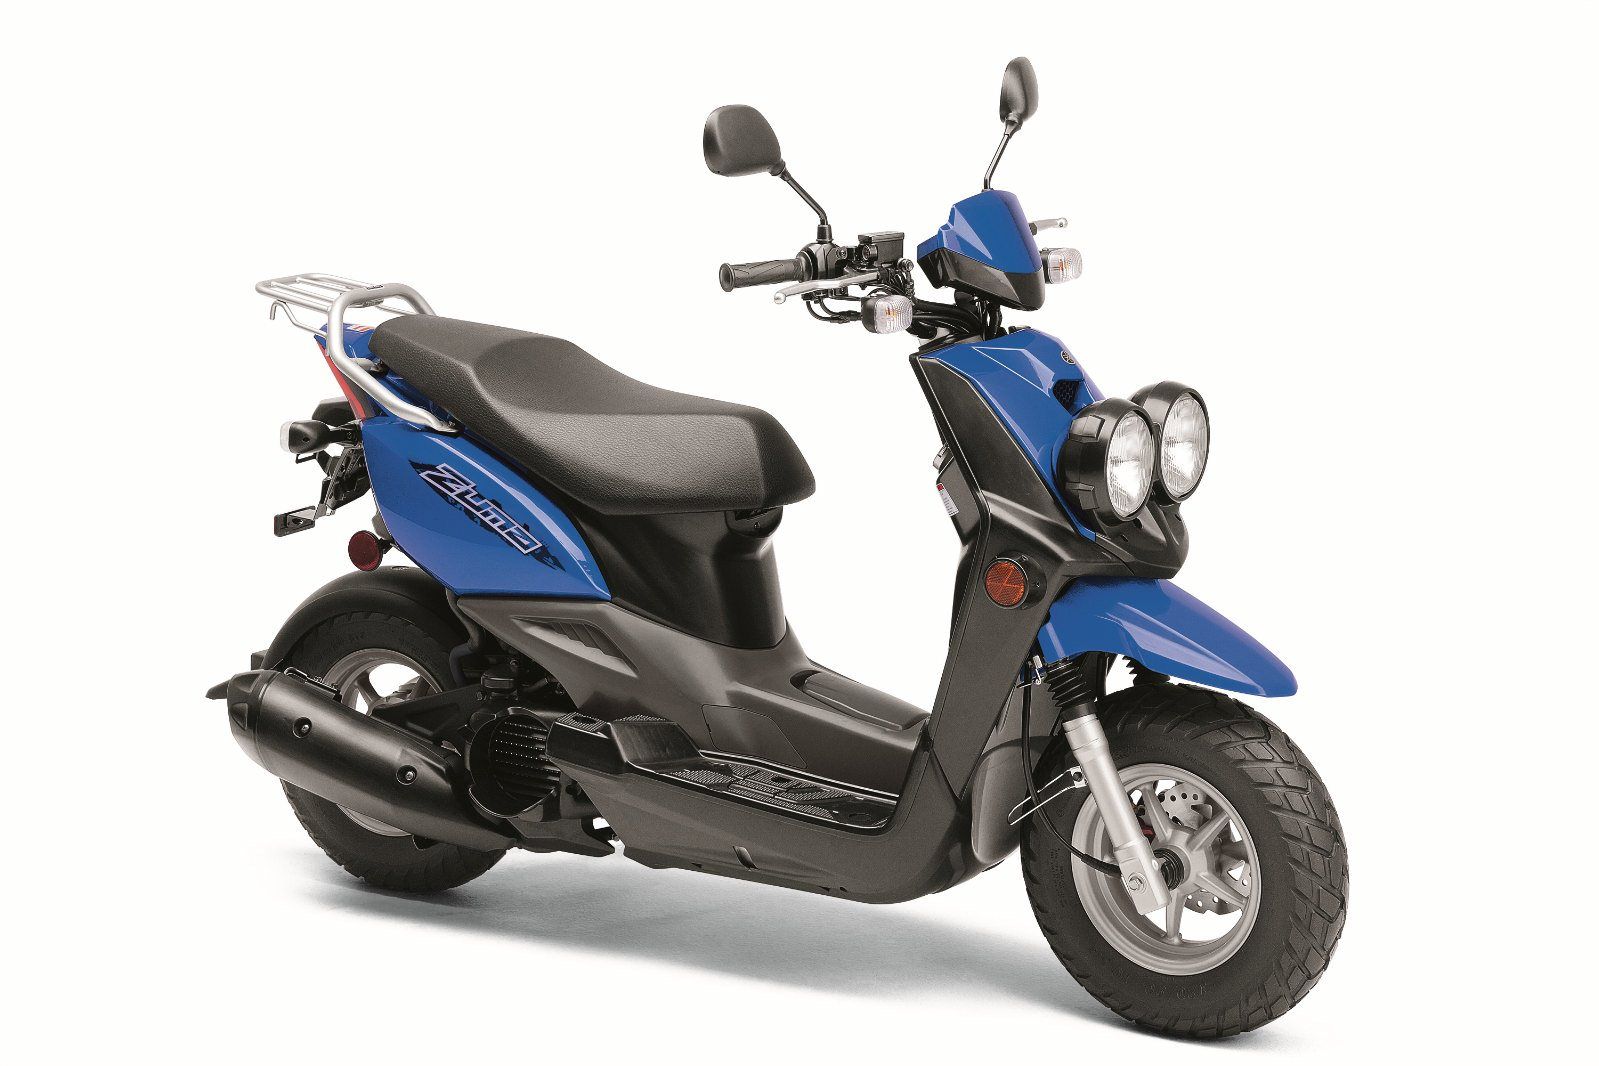 Black and Blue Yamaha Zuma 125 scooter